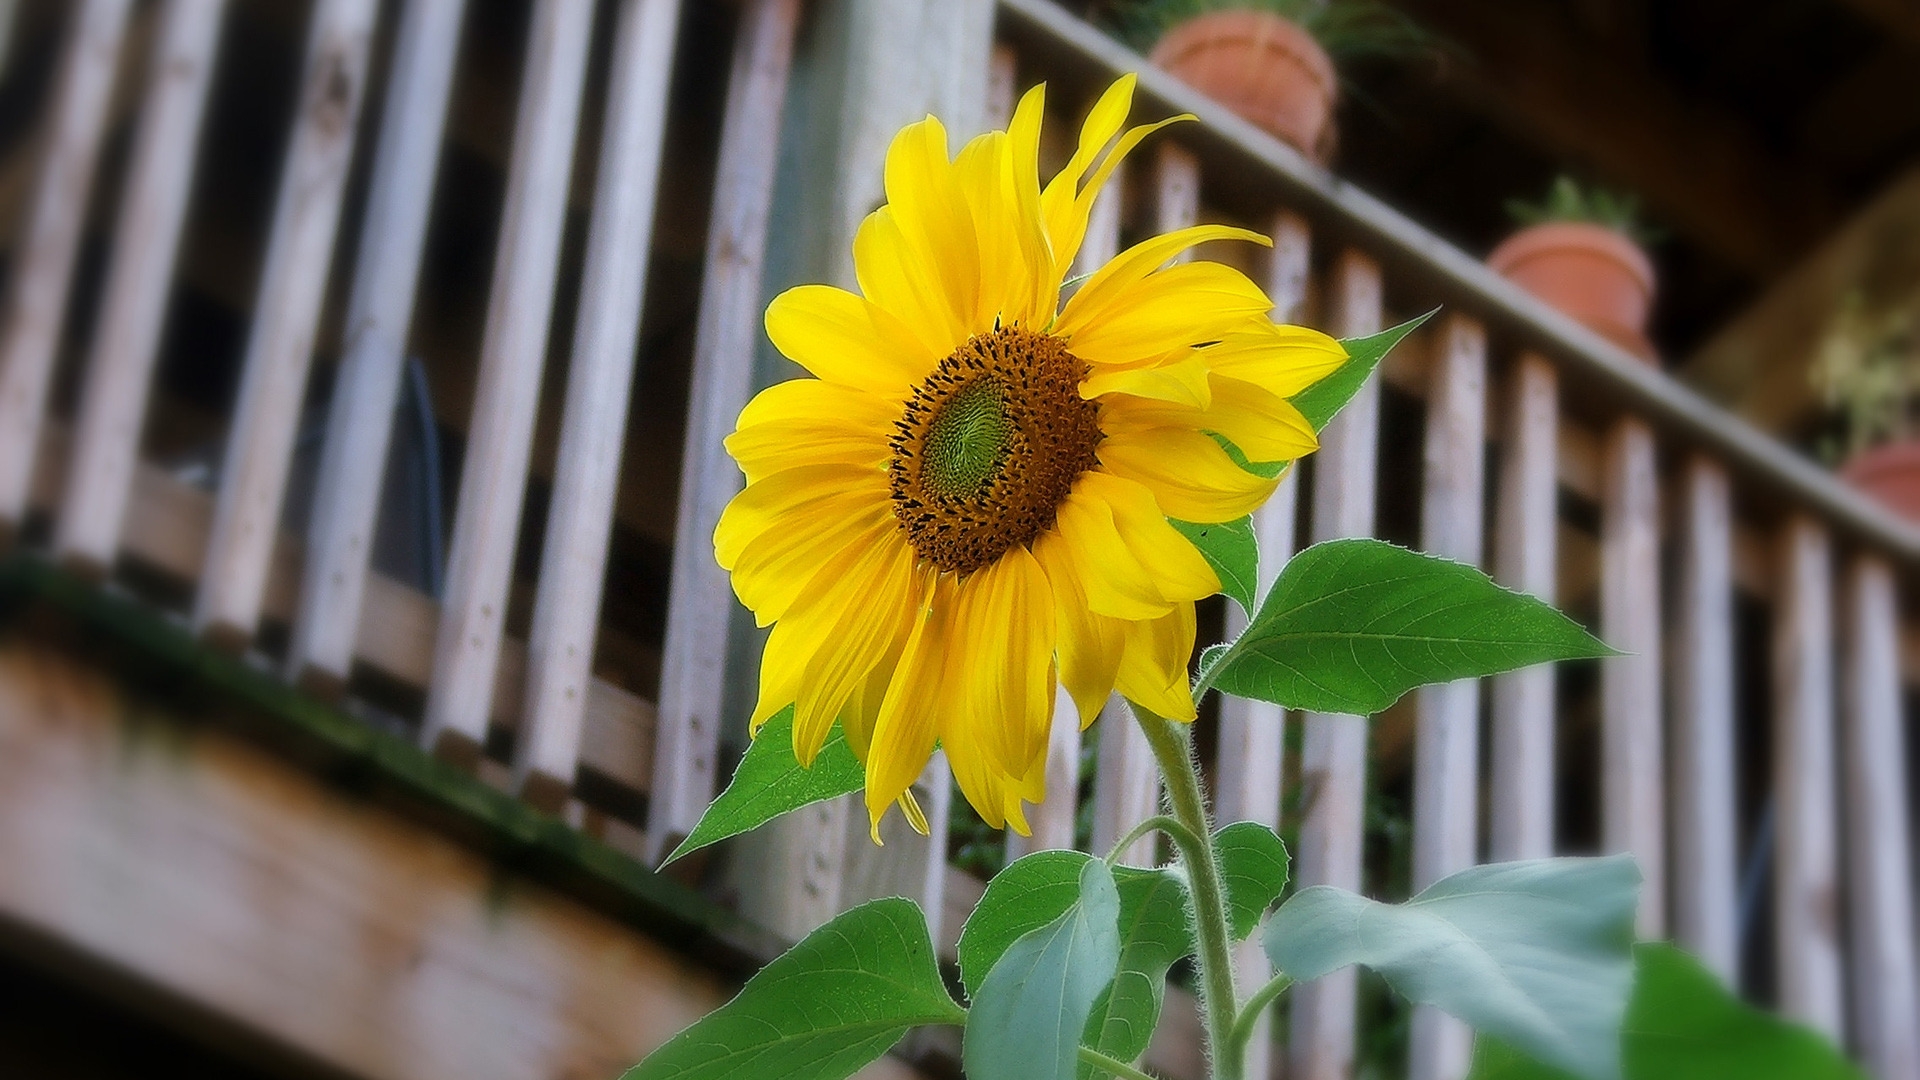 Sunflower for 1920 x 1080 HDTV 1080p resolution